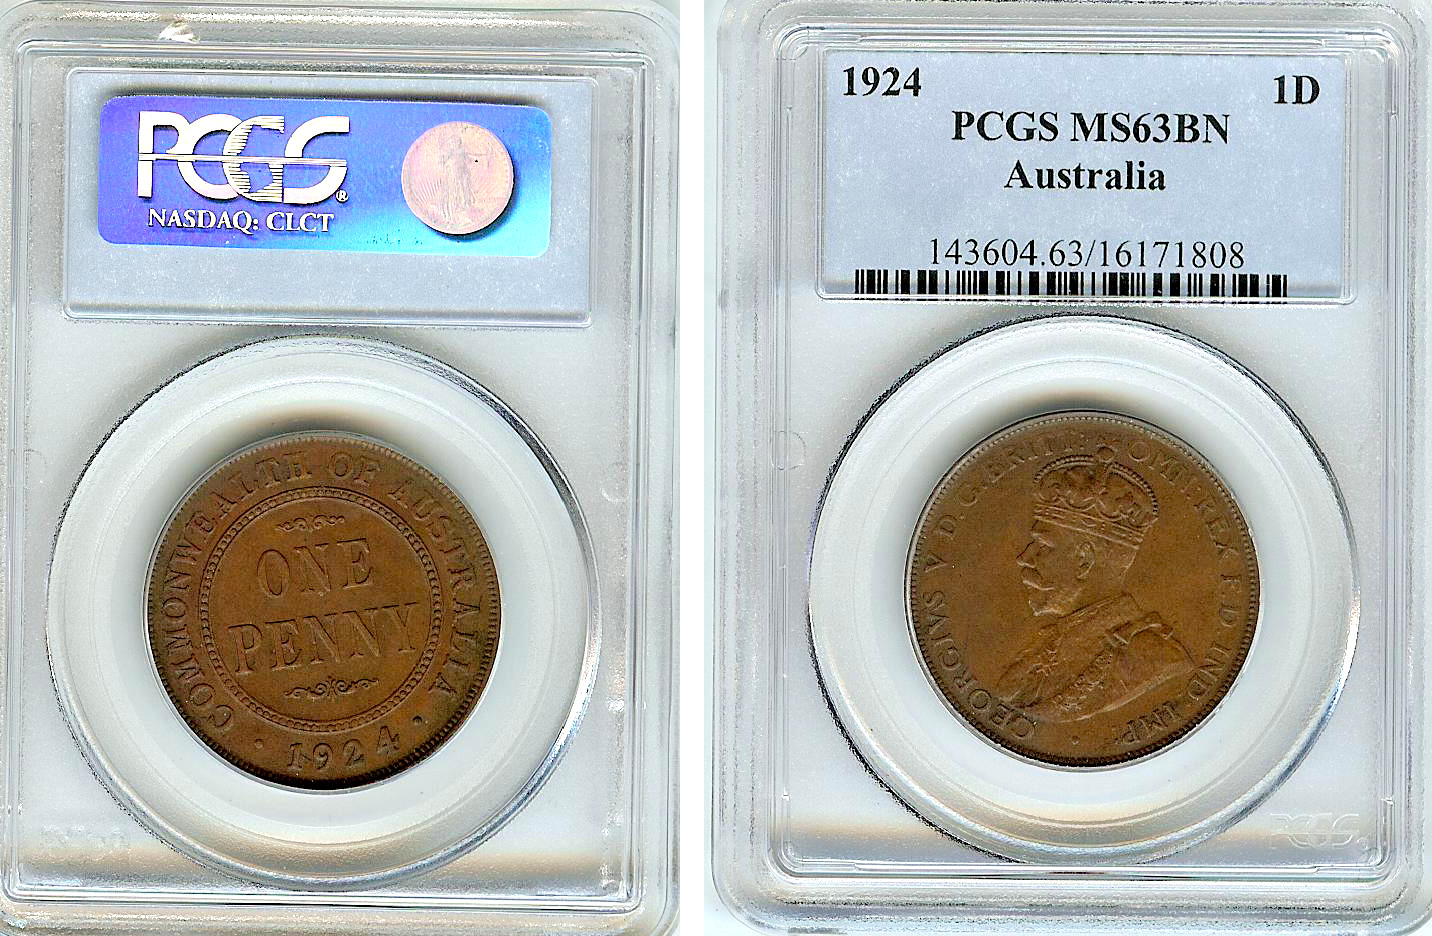 Australian penny 1924 PCGS MS63BN